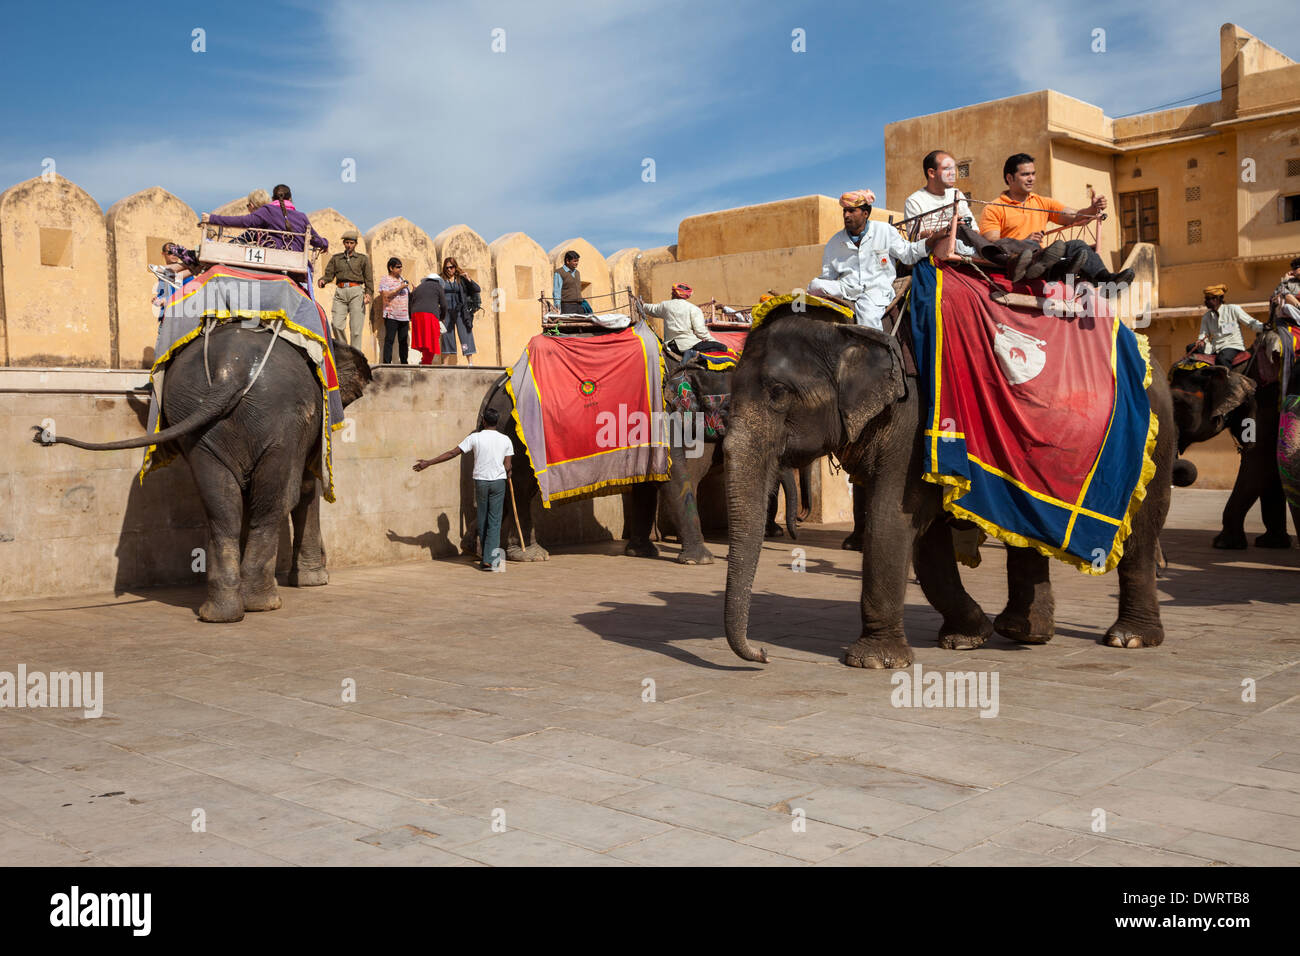 Amber (amer) ou Palace, près de Jaipur, Rajasthan, Inde. Après l'école jusqu'à la colline, les passagers descendre dans la cour du palais. Banque D'Images